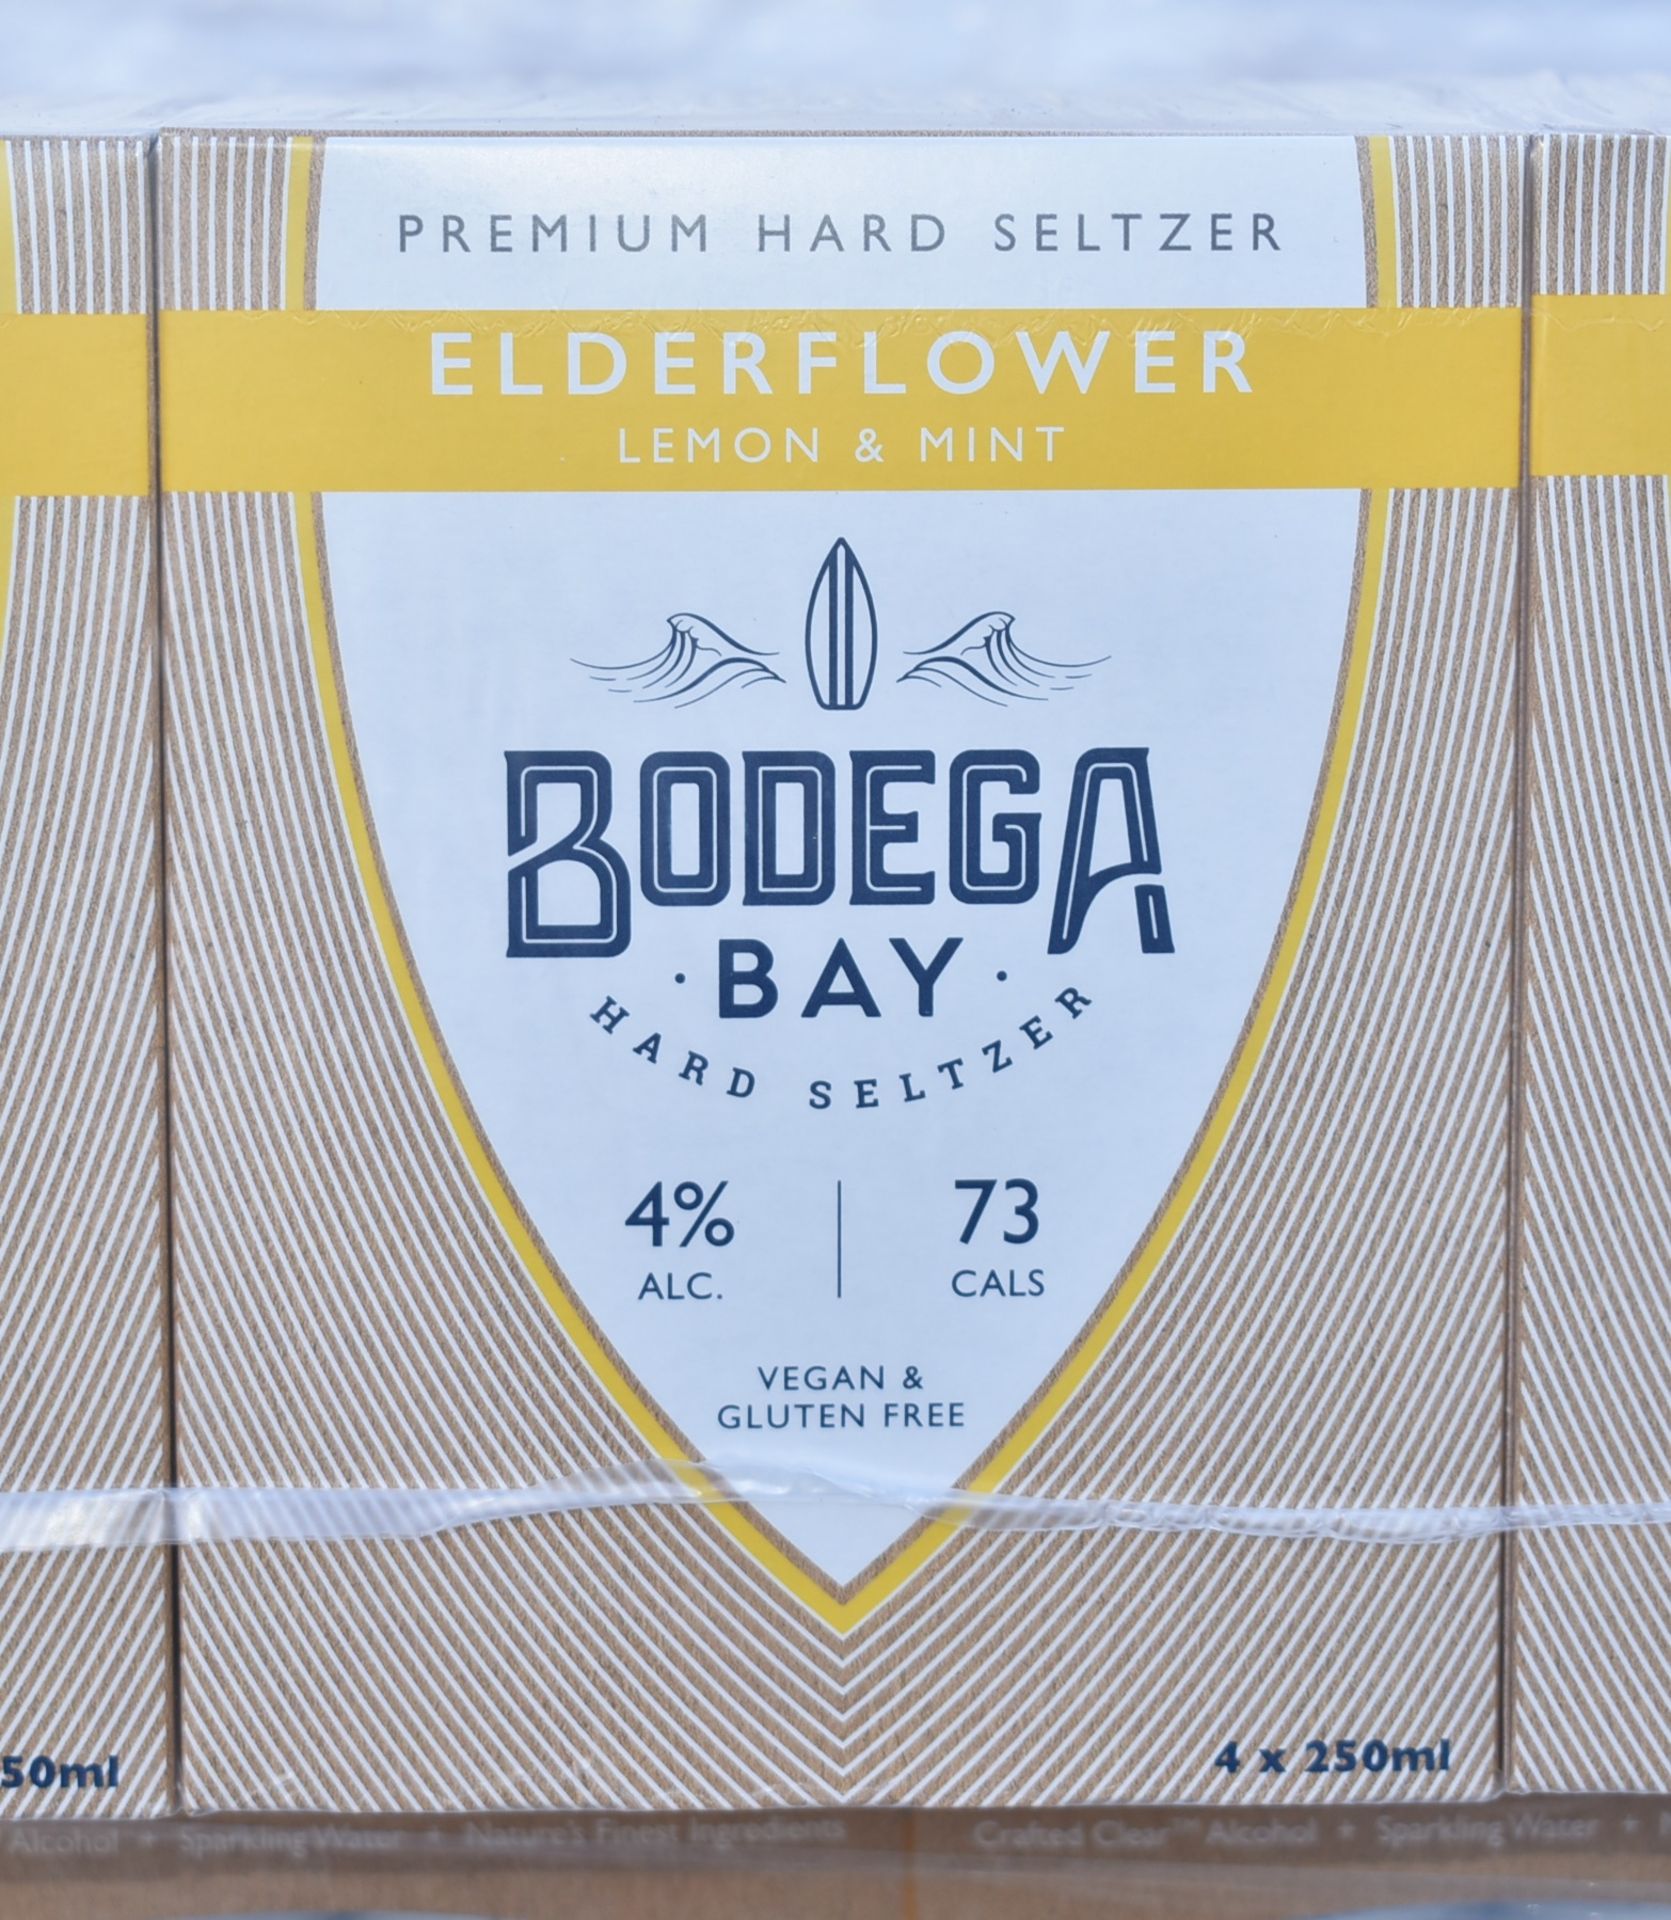 24 x Bodega Bay Hard Seltzer 250ml Alcoholic Sparkling Water Drinks - Elderflower Lemon & Mint - - Image 4 of 8